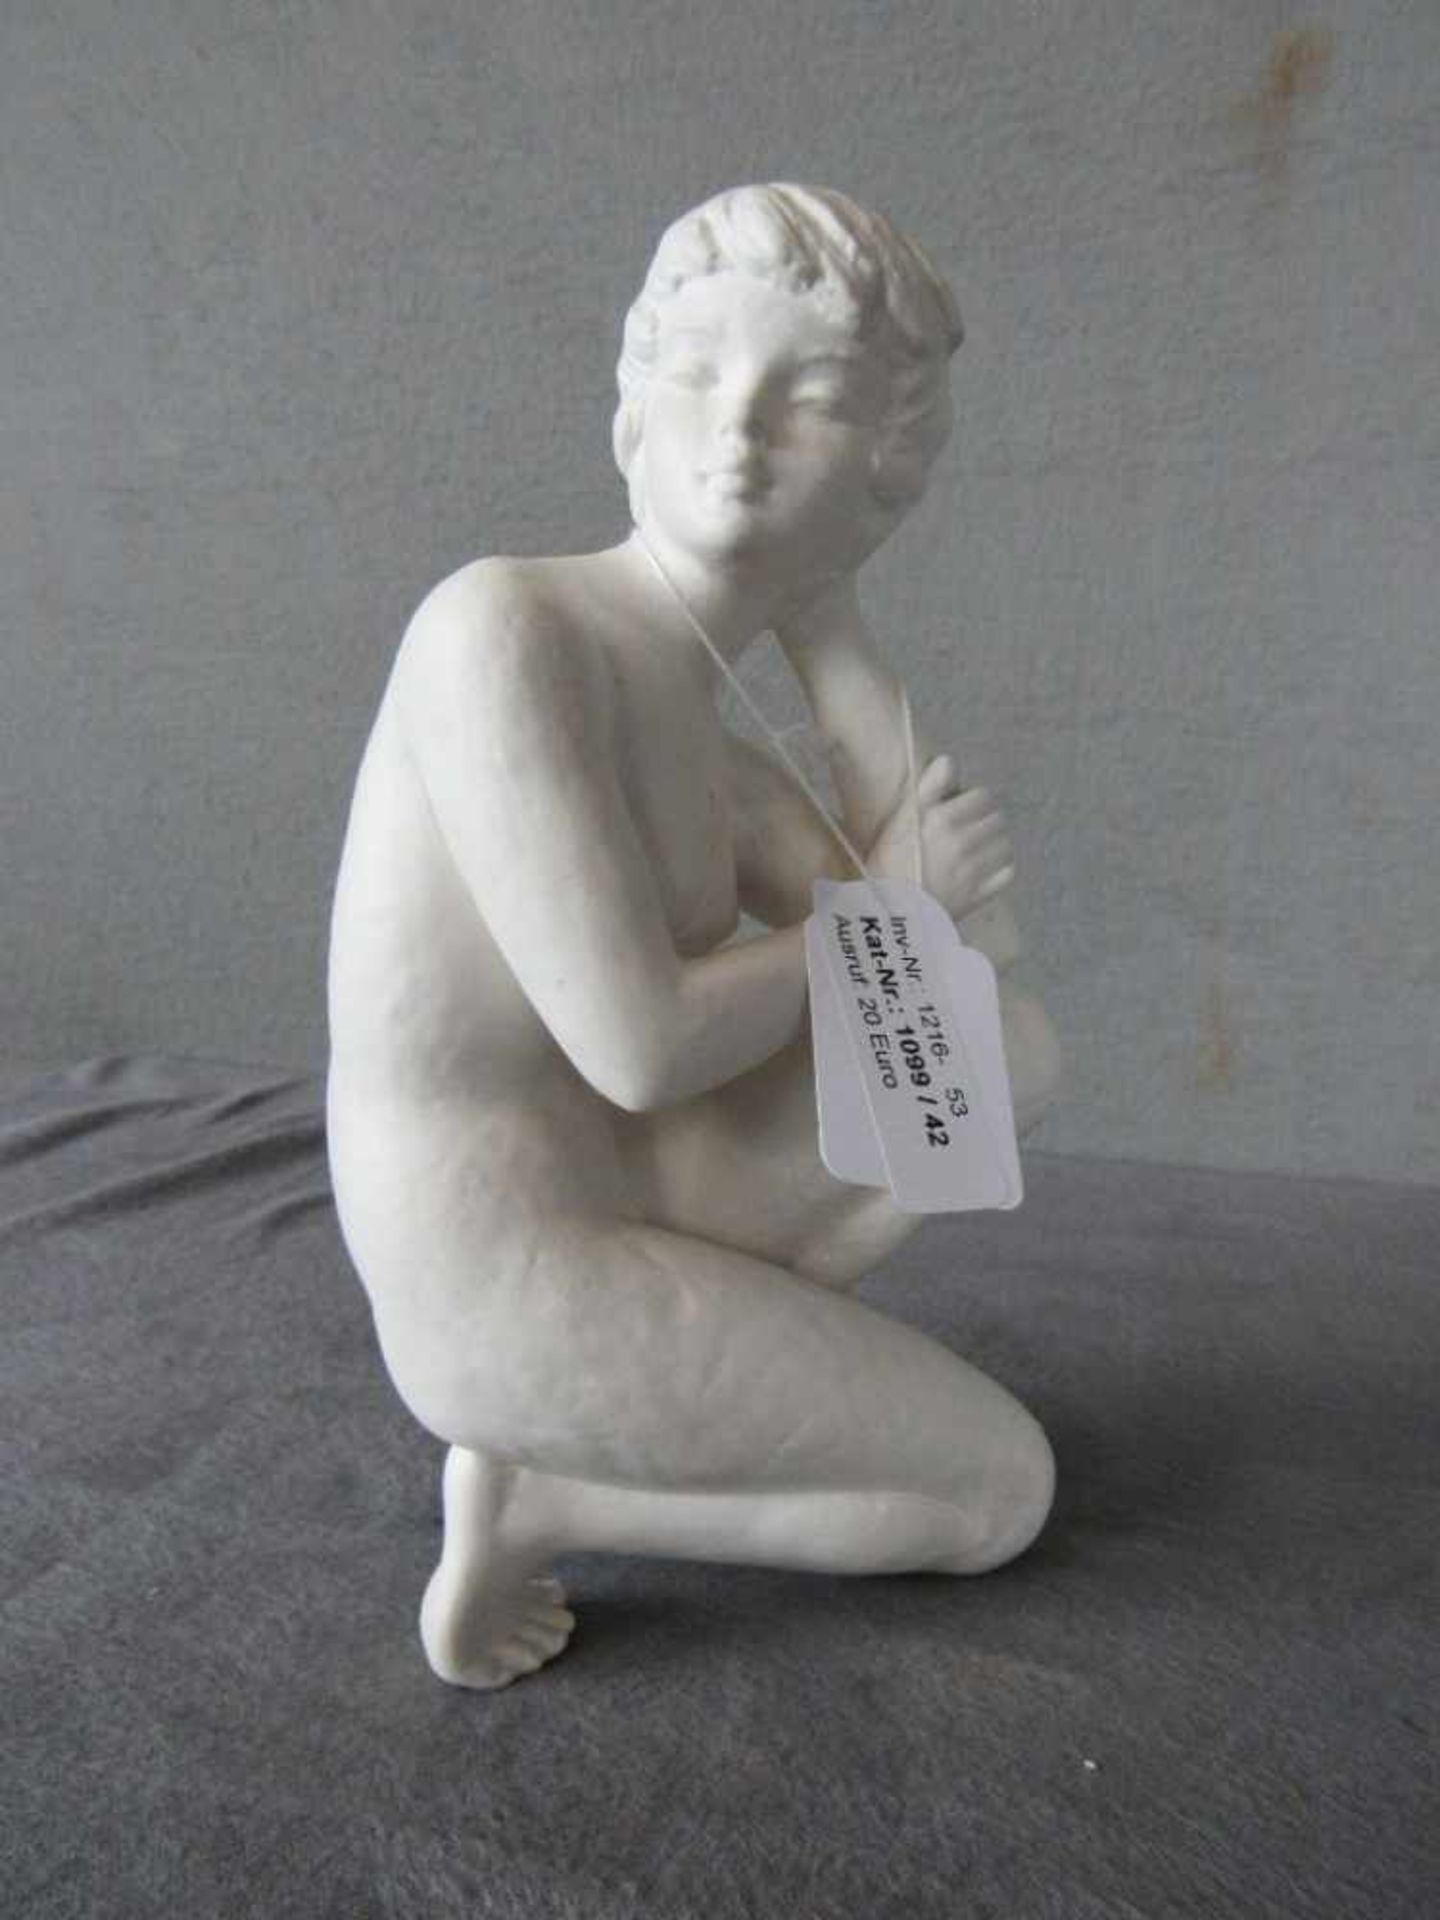 Skulptur weibliche Aktszene Goebel FN73 22,5cm hoch- - -20.00 % buyer's premium on the hammer - Image 2 of 2